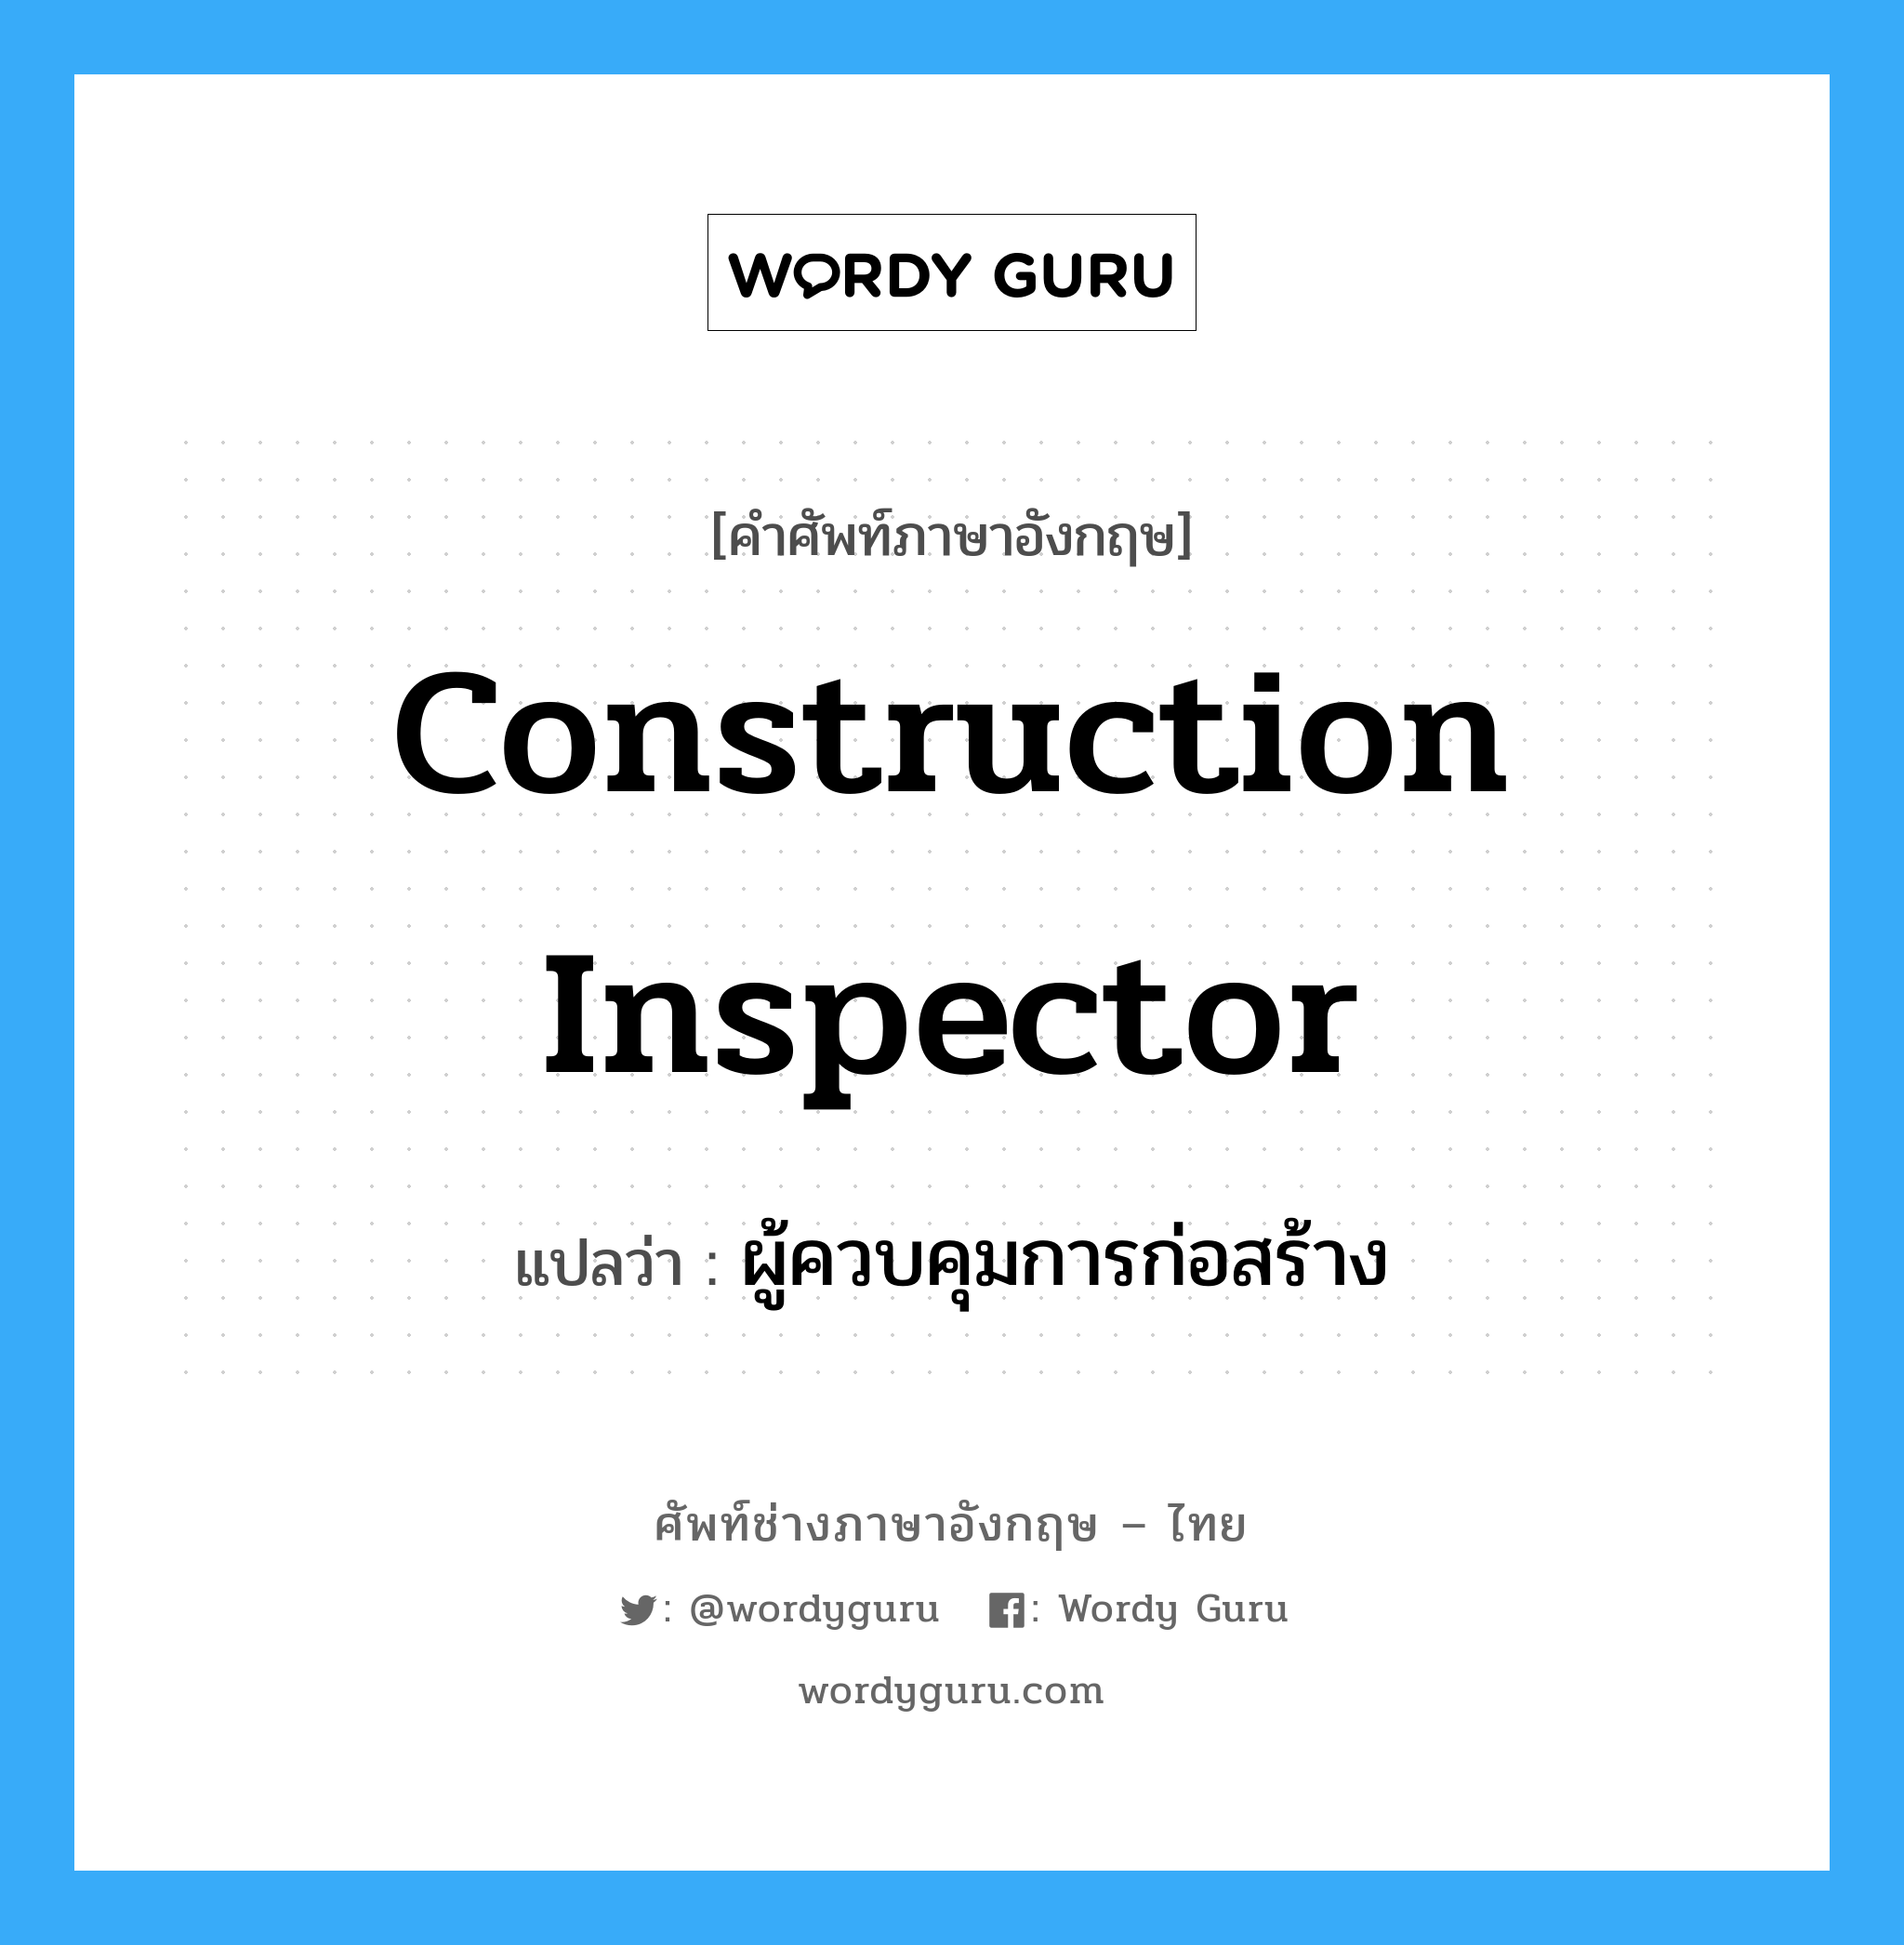 ผู้ควบคุมการก่อสร้าง ภาษาอังกฤษ?, คำศัพท์ช่างภาษาอังกฤษ - ไทย ผู้ควบคุมการก่อสร้าง คำศัพท์ภาษาอังกฤษ ผู้ควบคุมการก่อสร้าง แปลว่า construction inspector